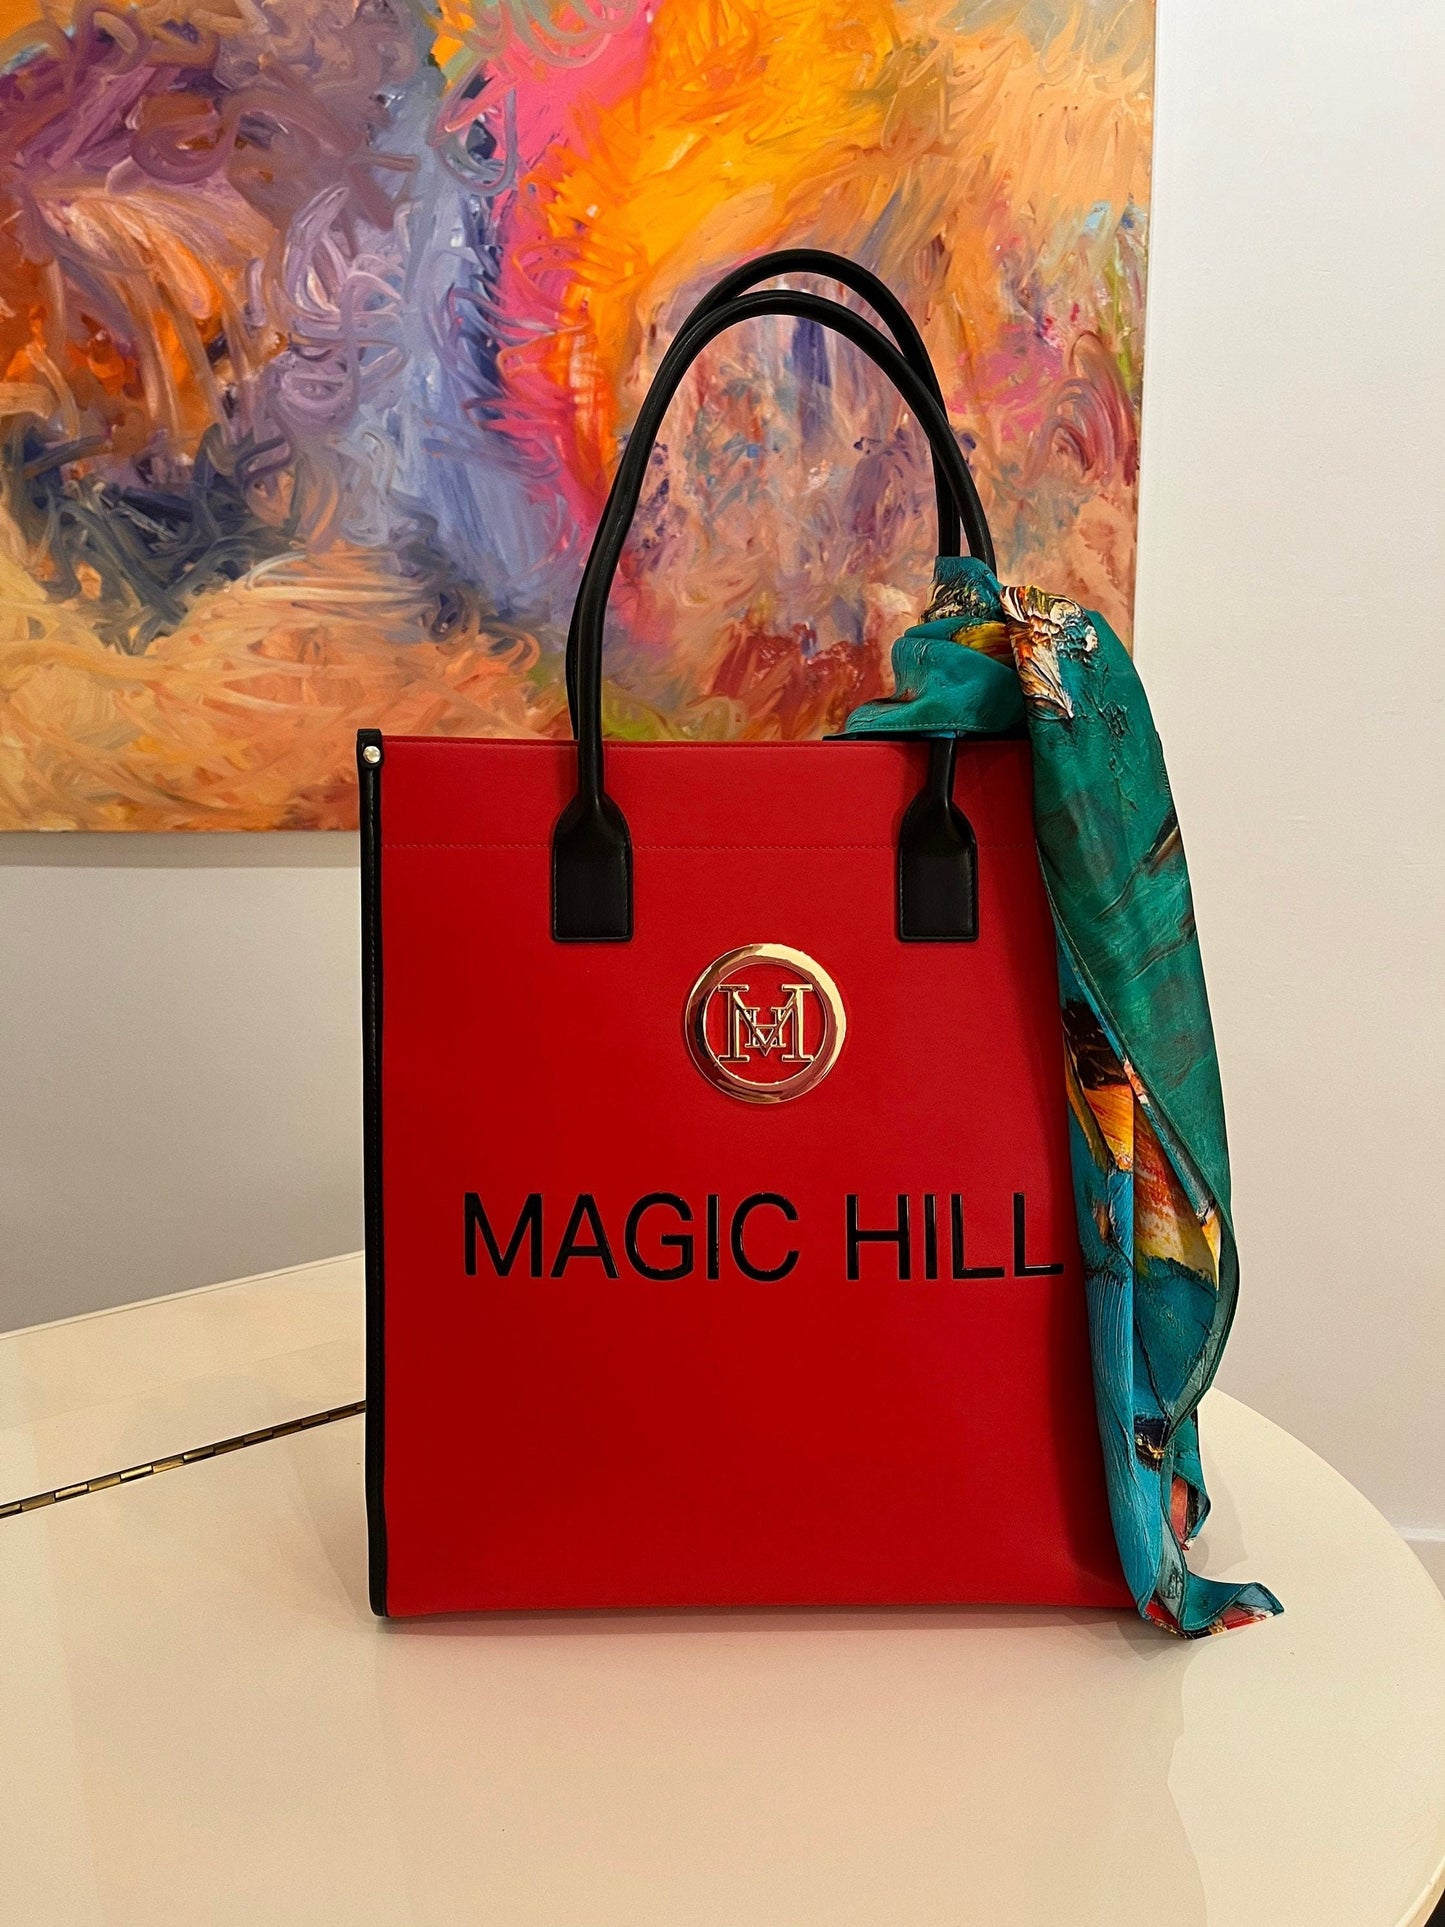 MAGIC HILL - Shoulder Tote bag MAGIC Vegan Grade A Leather